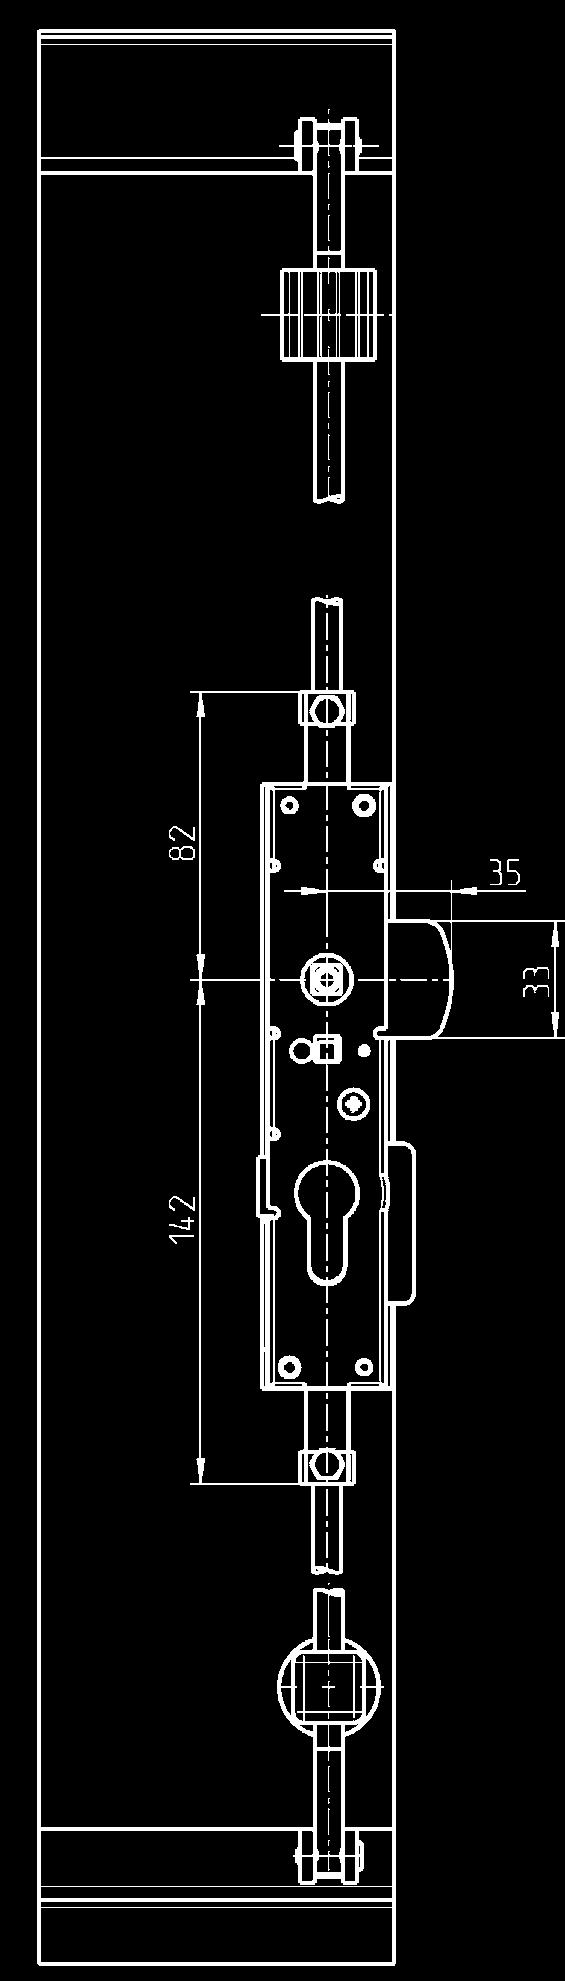 Hub 18 mm Schlossunterfütterung Stangenschloss Schlüsselfang mit Betätigung Sperrschraube nach Einbau des Profil- Halbzylinders entfernen Lochbild Anschlussstange Profil-Halbzylinder